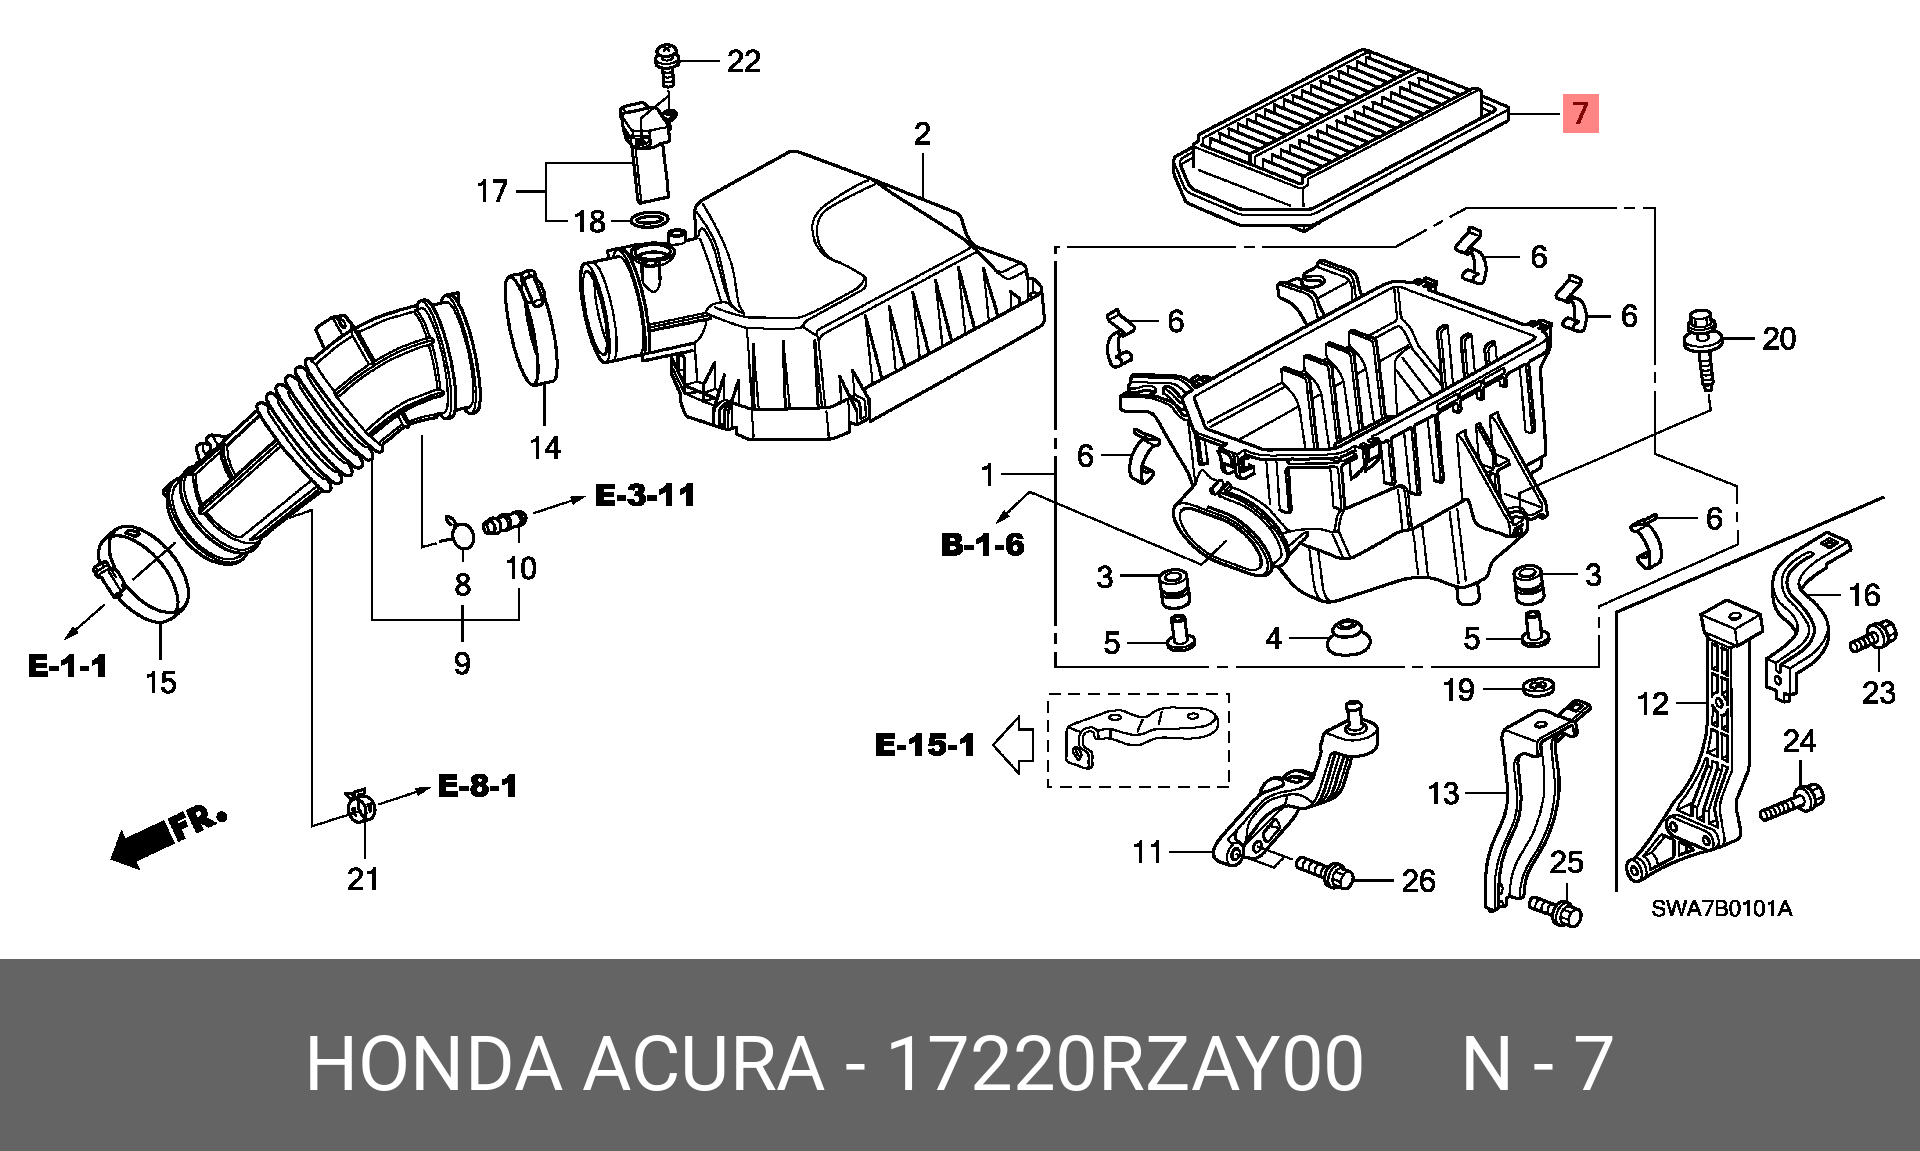 Воздушный фильтр фрид. Фильтр воздушный Honda CR-V 3 2.4. Honda CRV фильтр воздушный 2.4. Воздушная система Honda CR V 3. Корпус воздушного фильтра Honda XR 250.